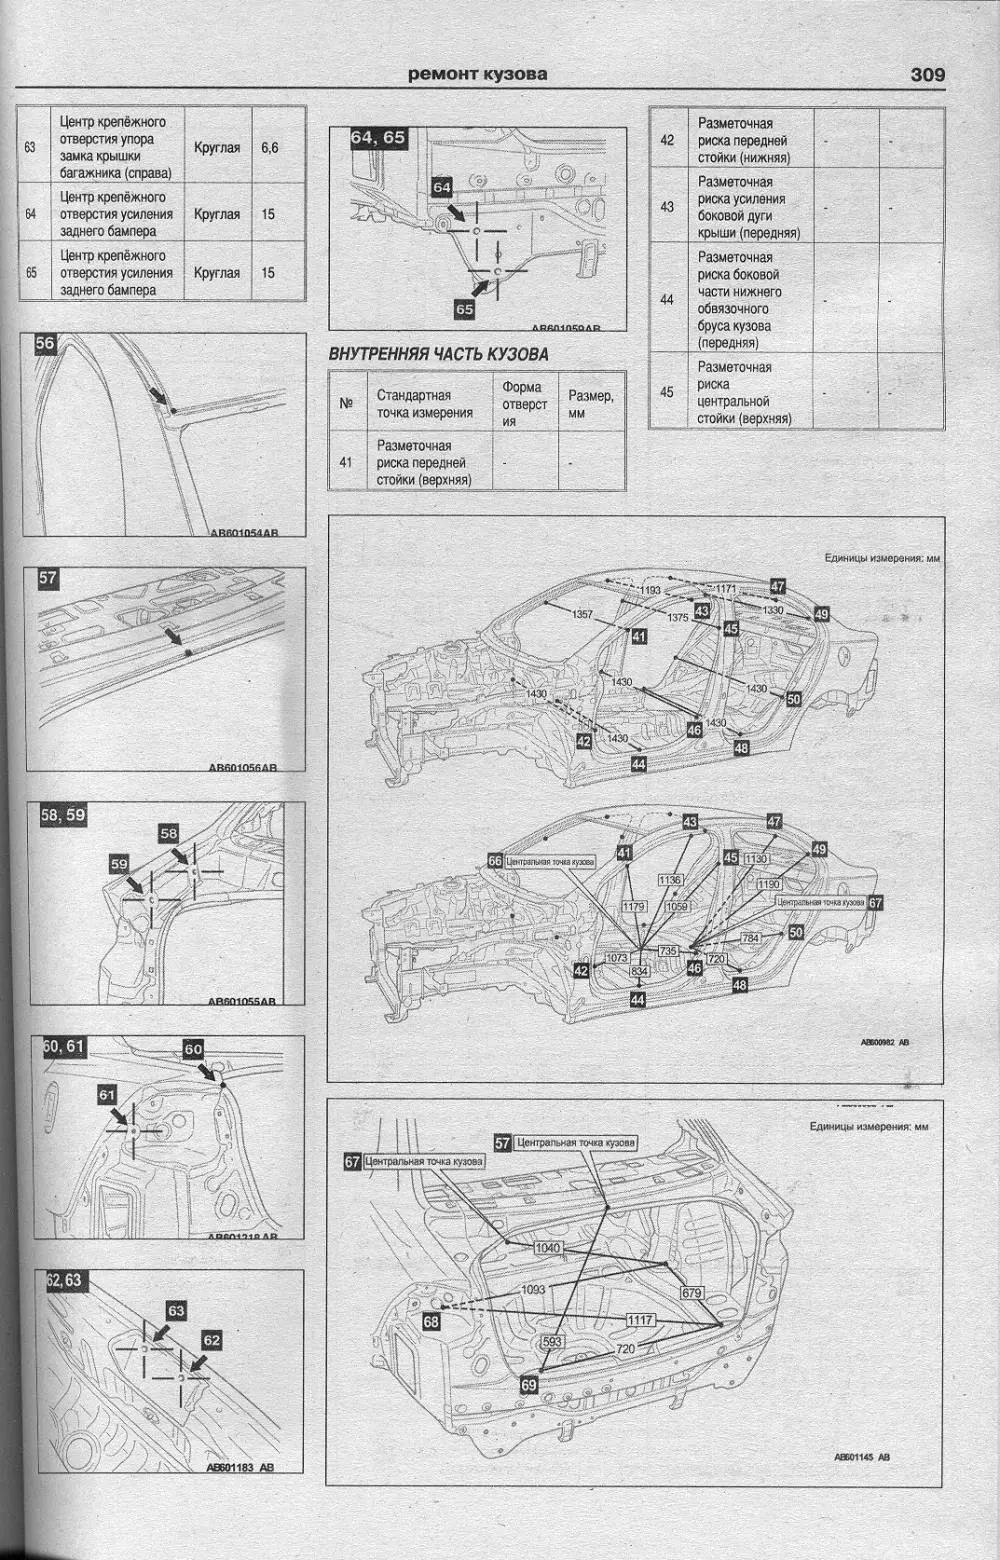 Книга Mitsubishi Lancer 10 с 2007 бензин, электросхемы. Руководство по ремонту и эксплуатации автомобиля. Атласы автомобилей